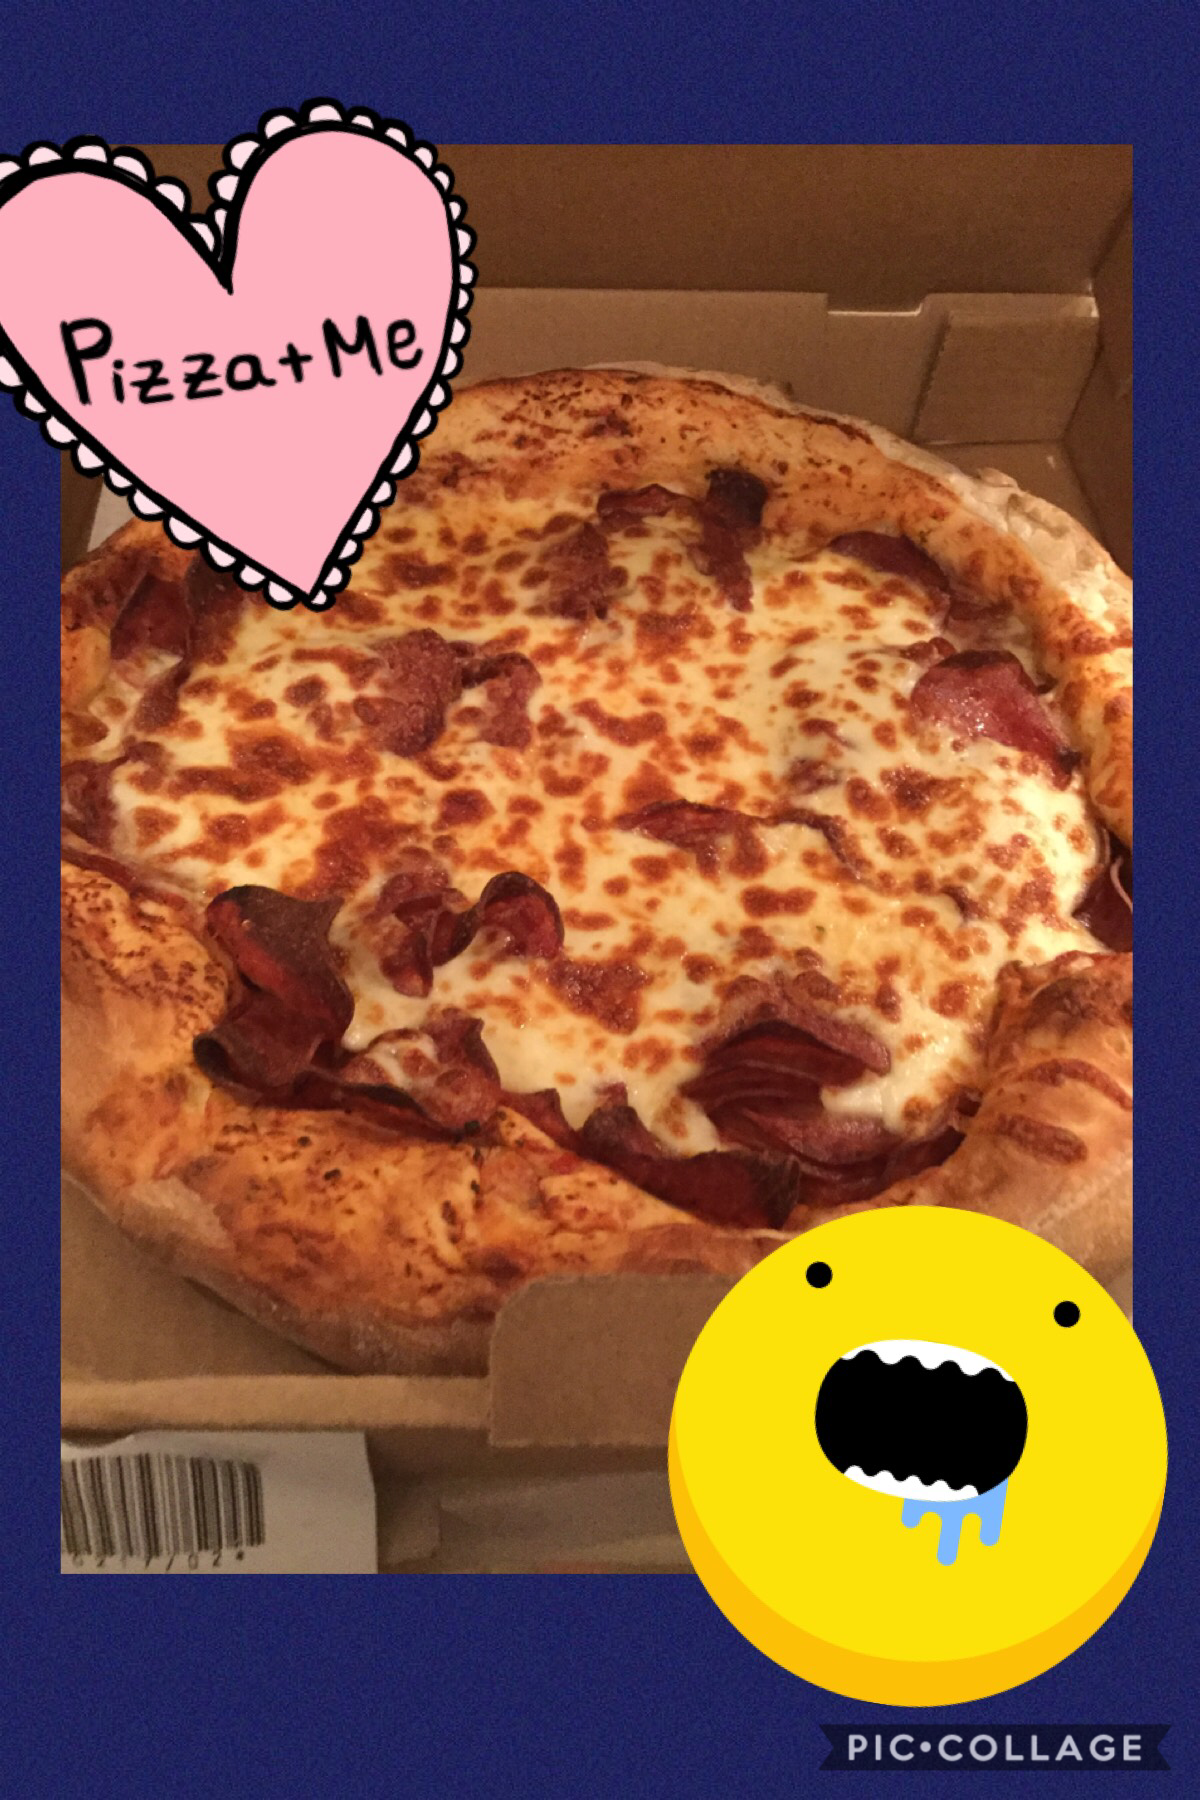 I Love pizza 🍕 